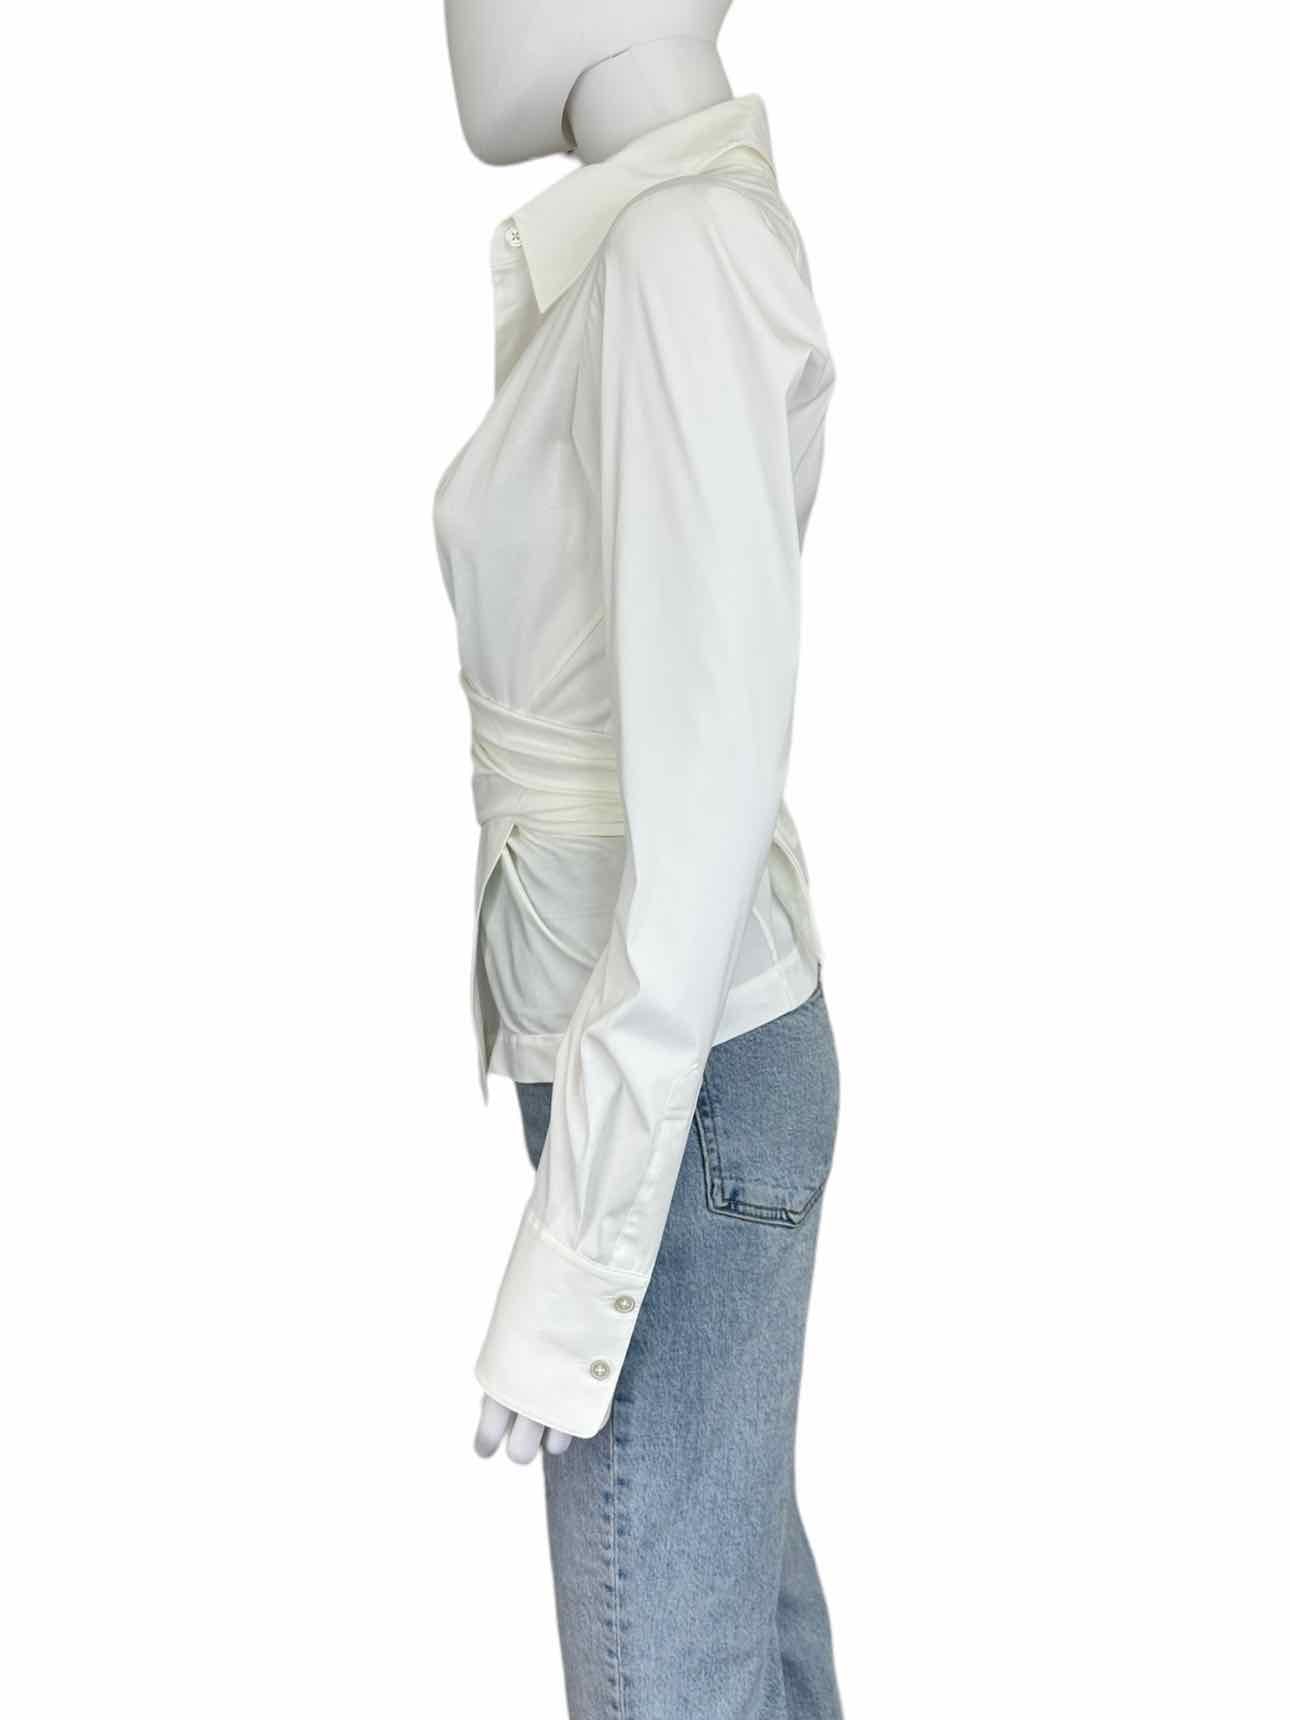 Donna Karan White Wrap Blouse Size S